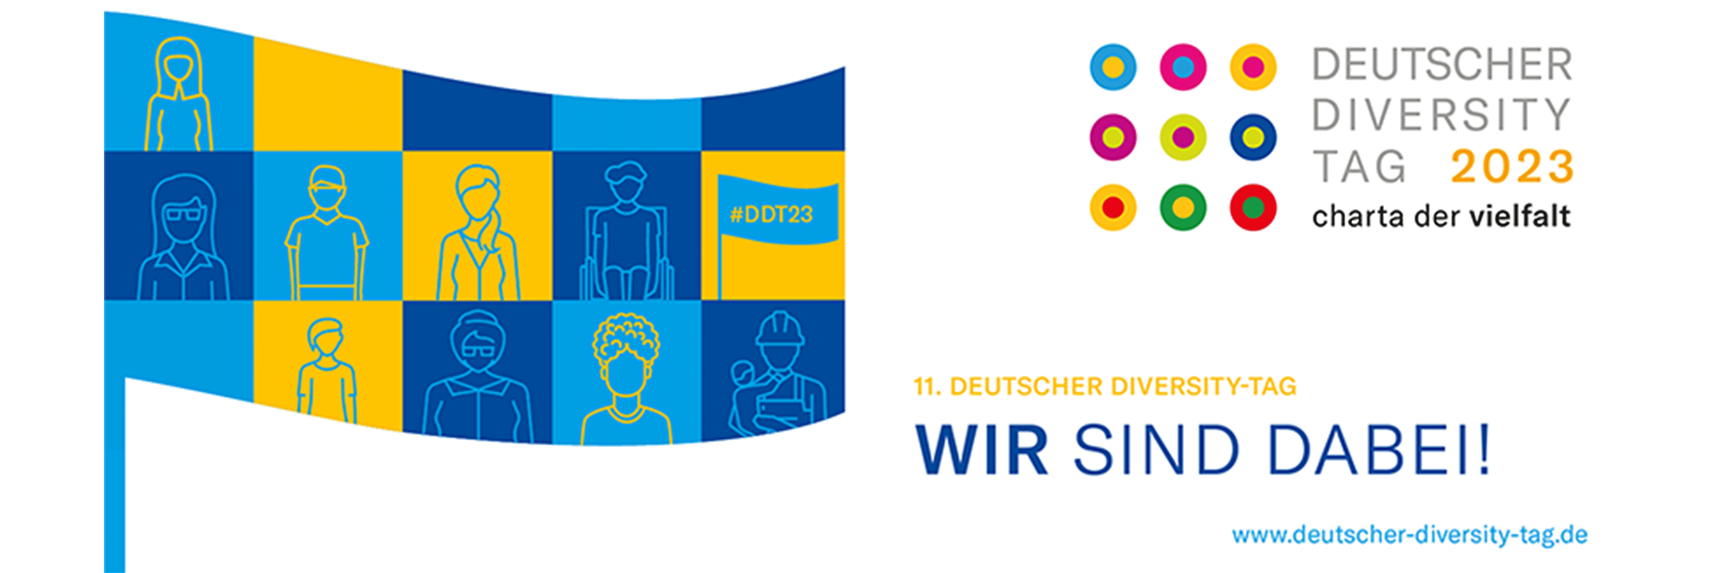 Der Countdown läuft – Seien Sie dabei! Am 23. Mai 2023 findet der 11. Deutsche Diversity-Tag statt. 